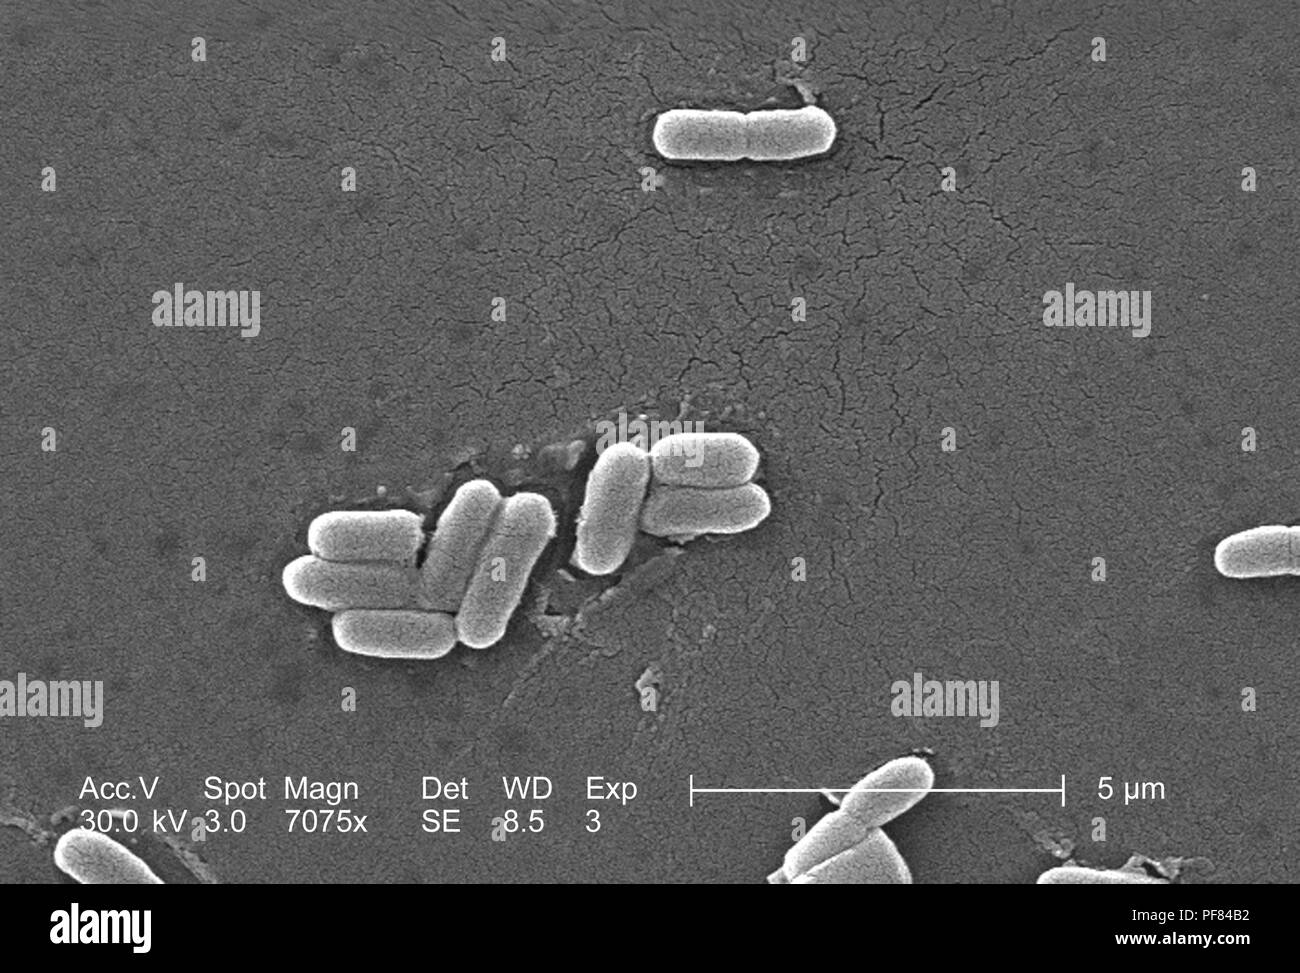 Gram-negativi Batteri Escherichia coli del ceppo O157:H7, ha rivelato nel 7075x di scansione ingrandita al microscopio elettronico (SEM) immagine, 2006. Immagine cortesia di centri per il controllo delle malattie (CDC) / Nazionale Escherichia, Shigella, Vibrio unità di riferimento presso la CDC. () Foto Stock